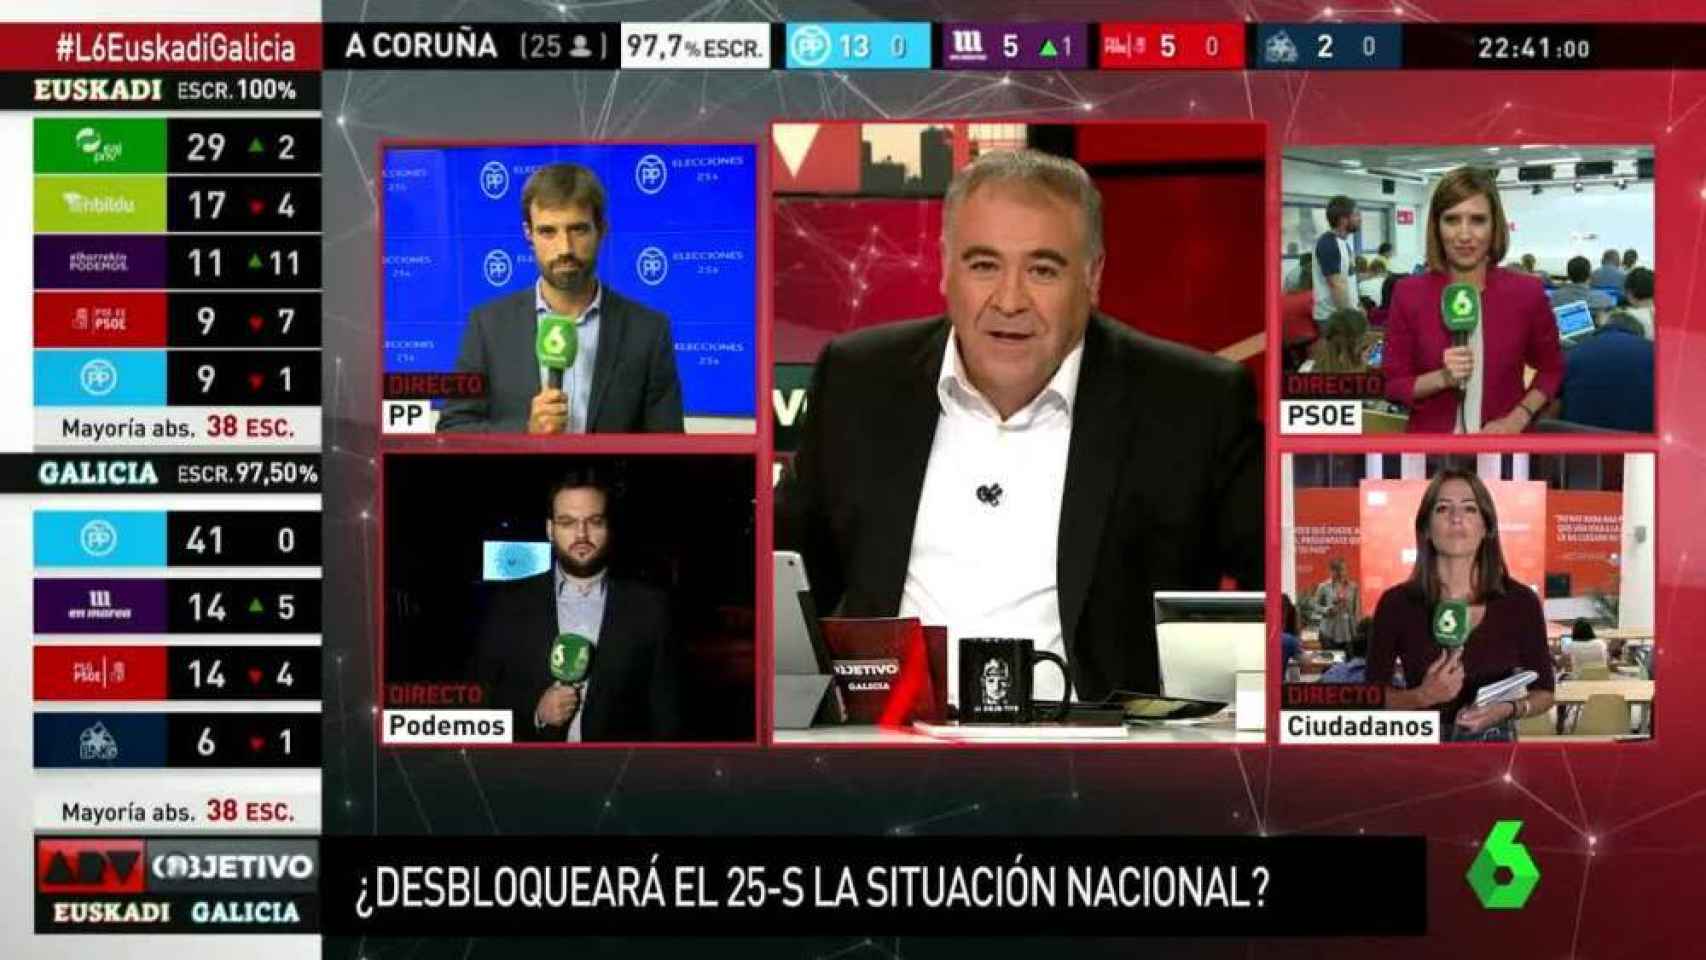 laSexta le vuelve a ganar a TVE en la noche electoral gallega y vasca